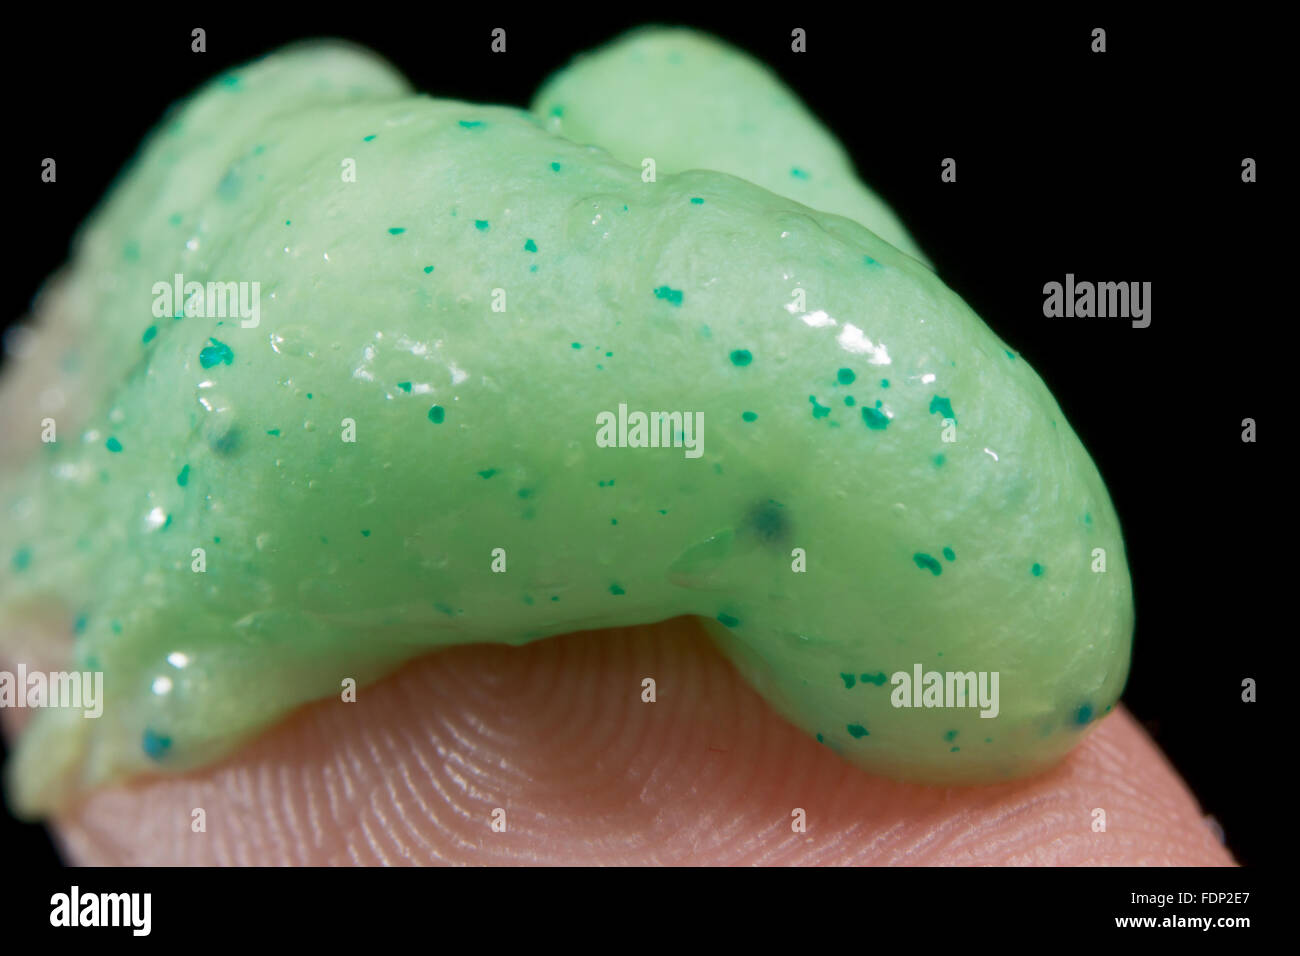 Nahaufnahme von Microbeads in ein Peeling Gesicht an der Spitze eines Fingers. Stockfoto